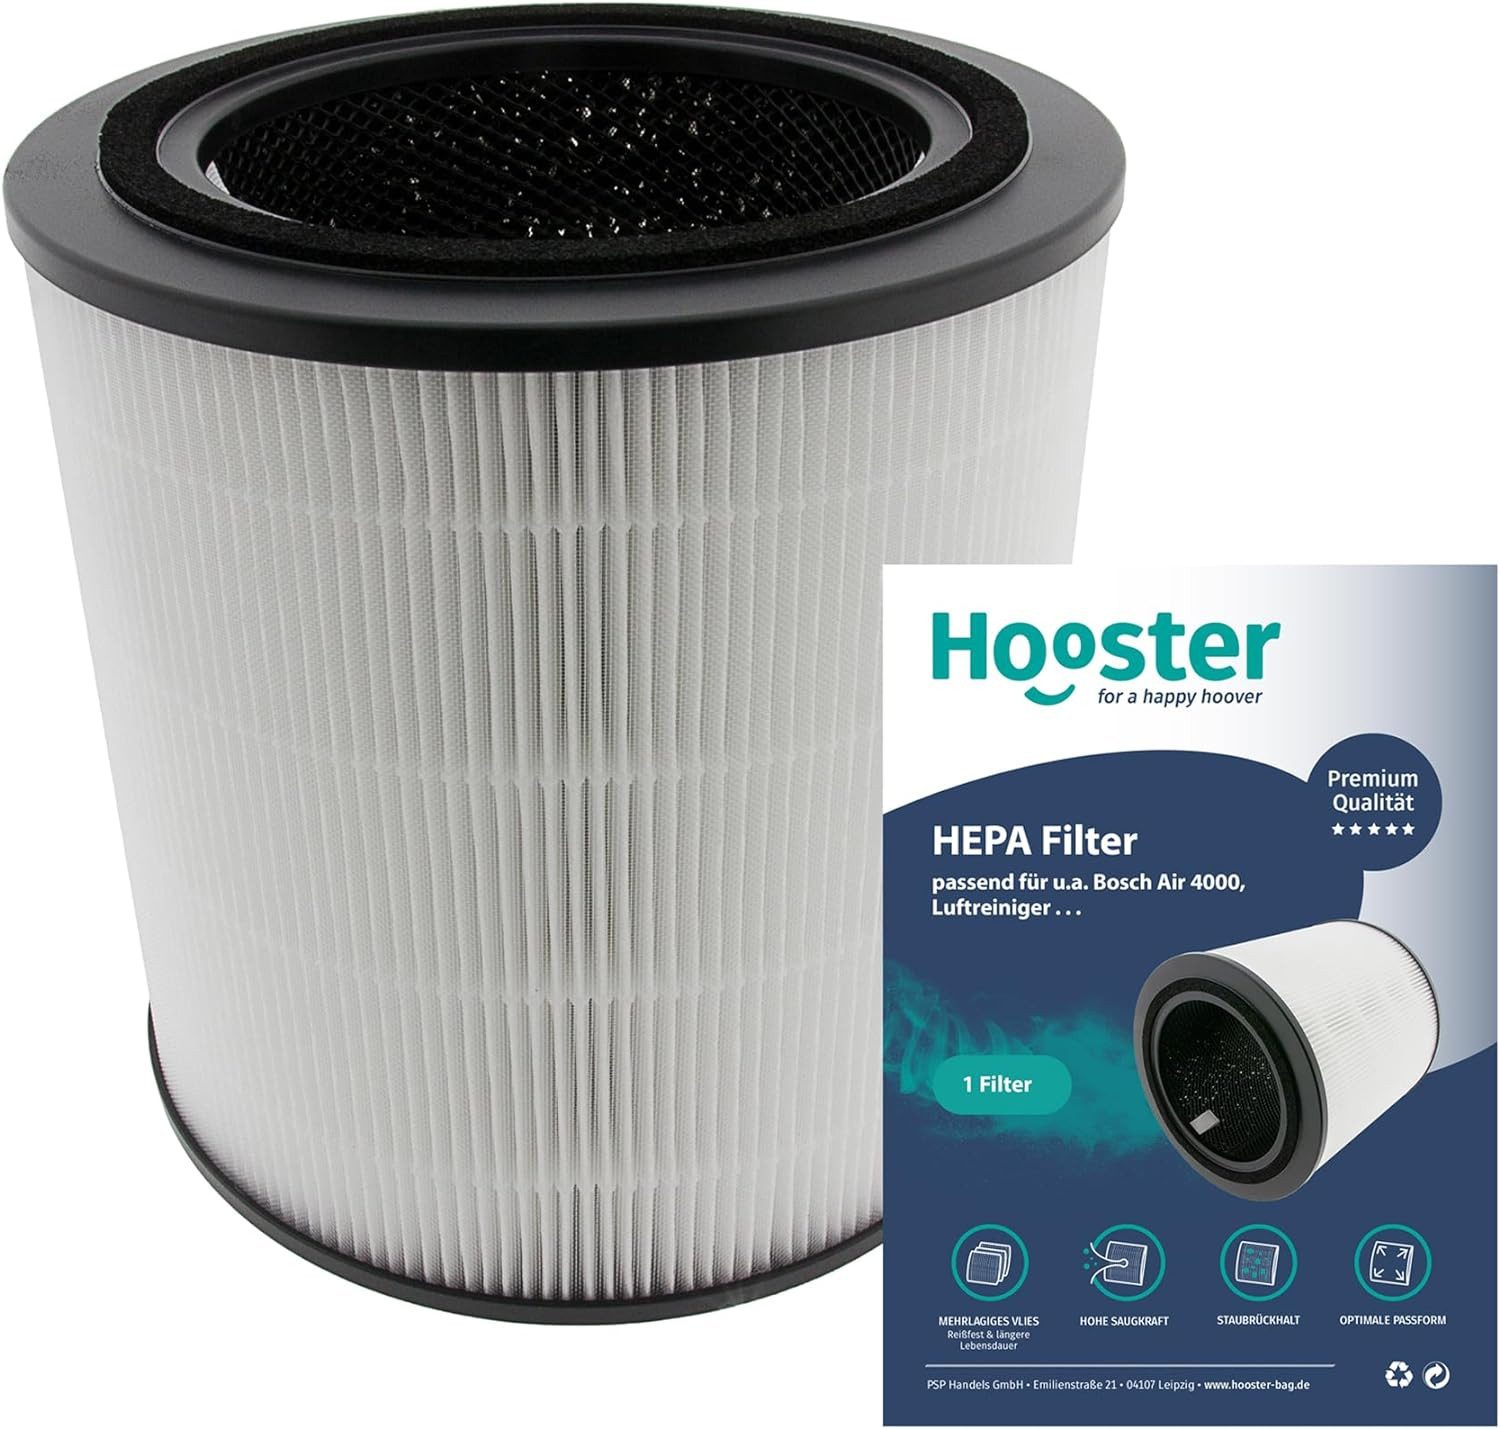 Hooster Luftfilter 1 Filter kompatibel mit Bosch Air 4000 Luftreiniger, 3in1 HEPA/Aktivkohle Filter für eine optimale Luftreinigung